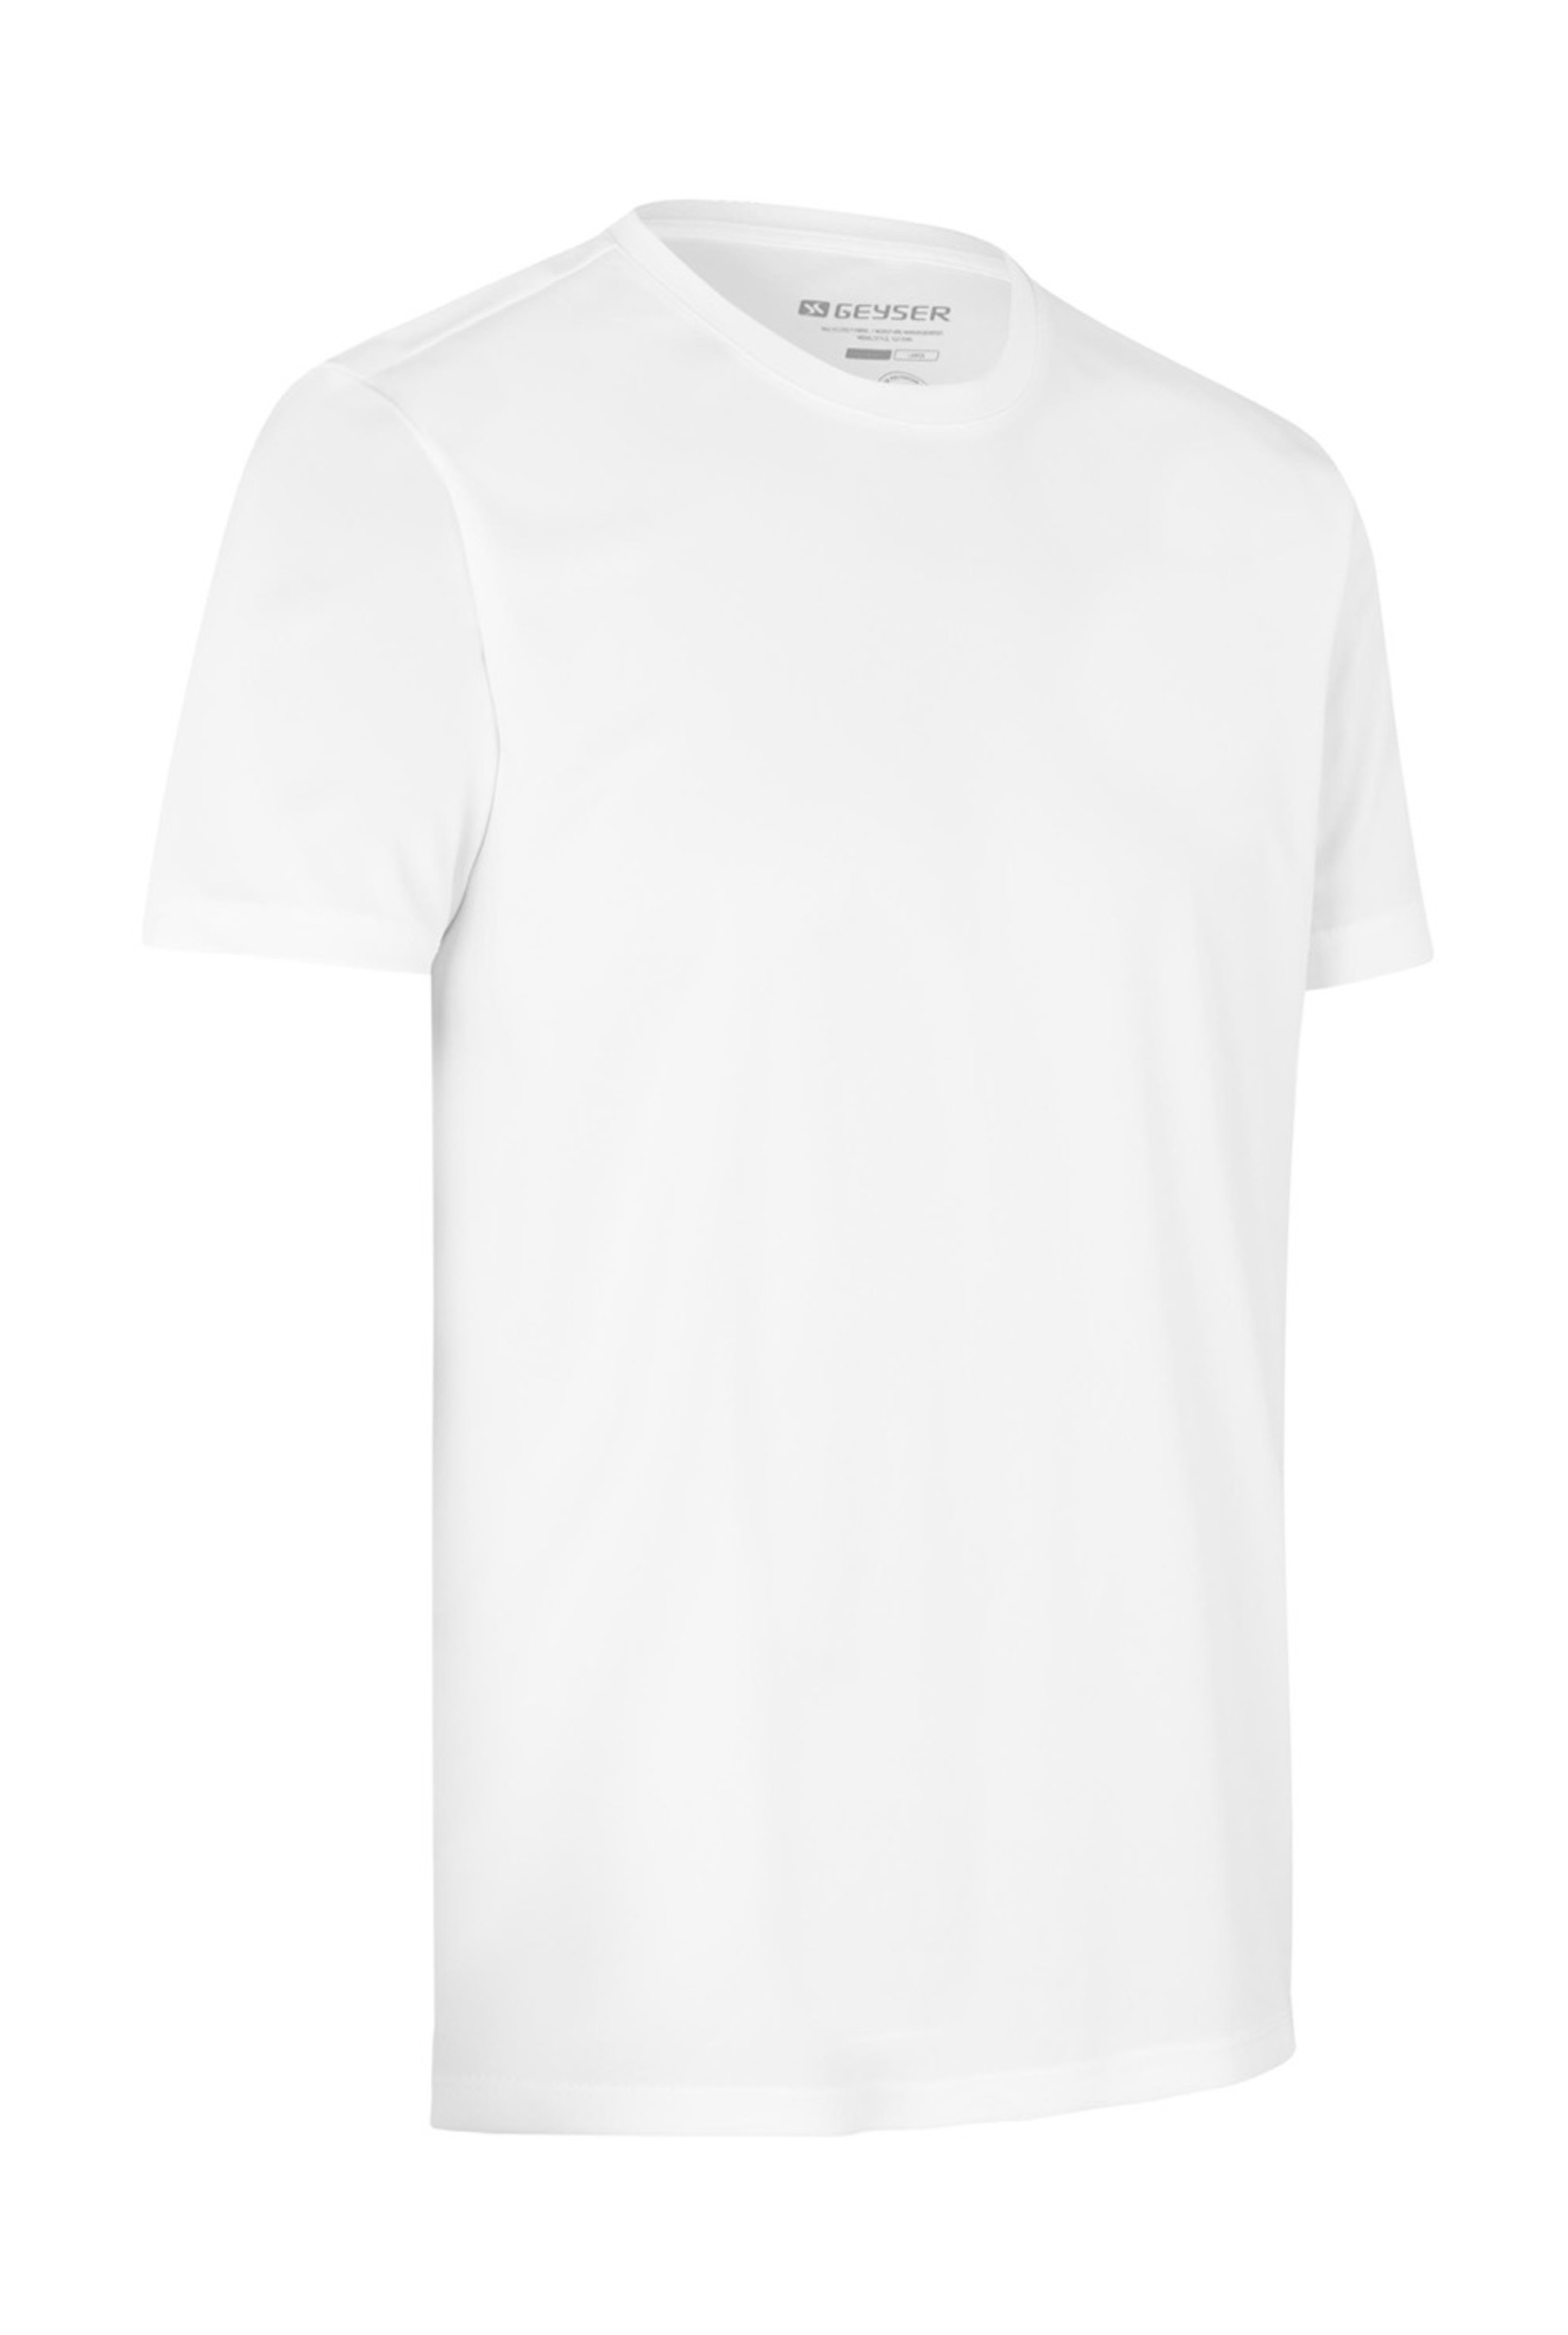 Idwear GEYSER T-shirt I essential